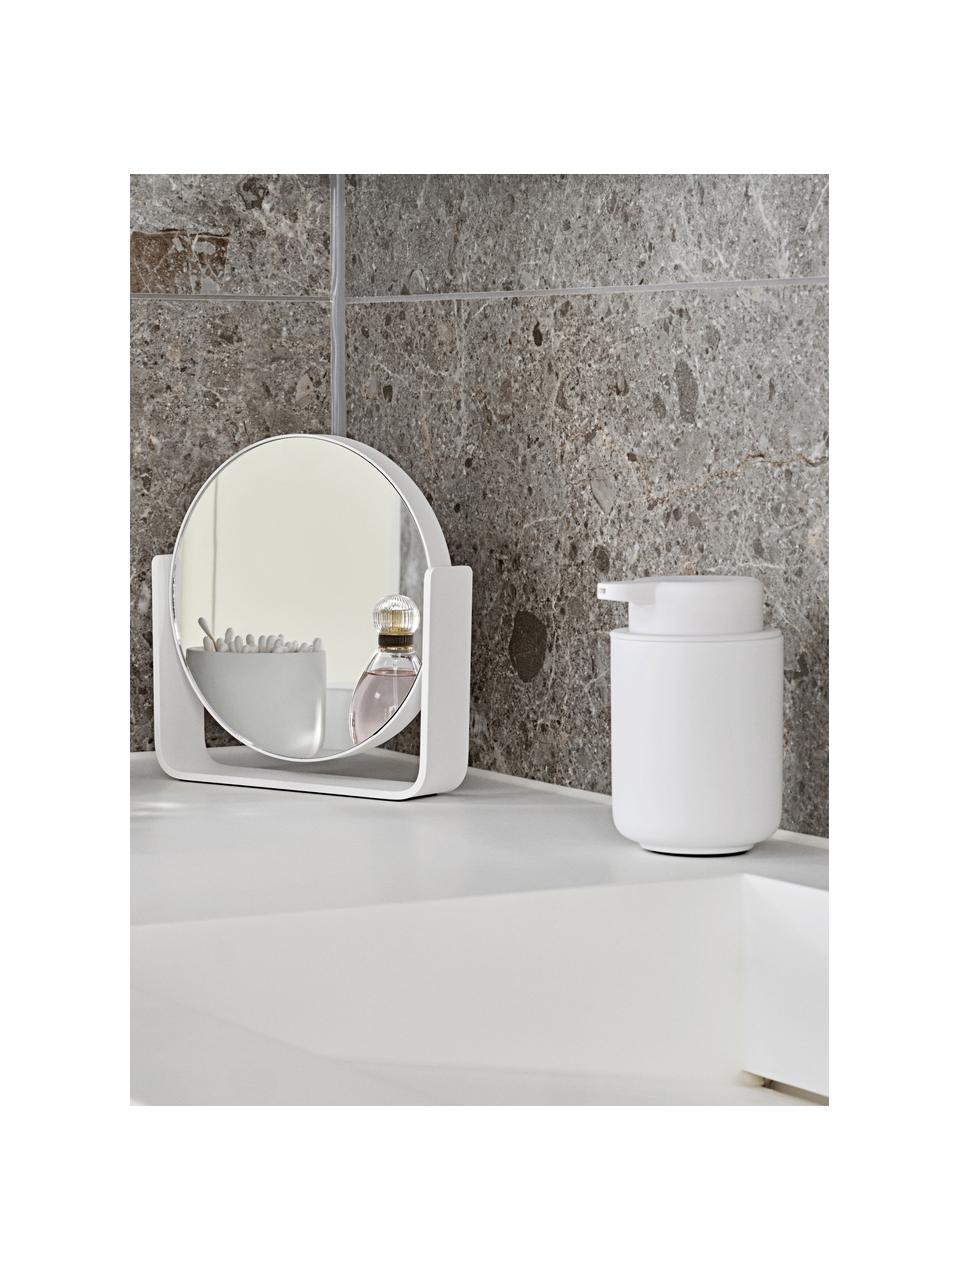 Runder Kosmetikspiegel Ume mit Vergrösserung, Weiss, B 19 x H 20 cm